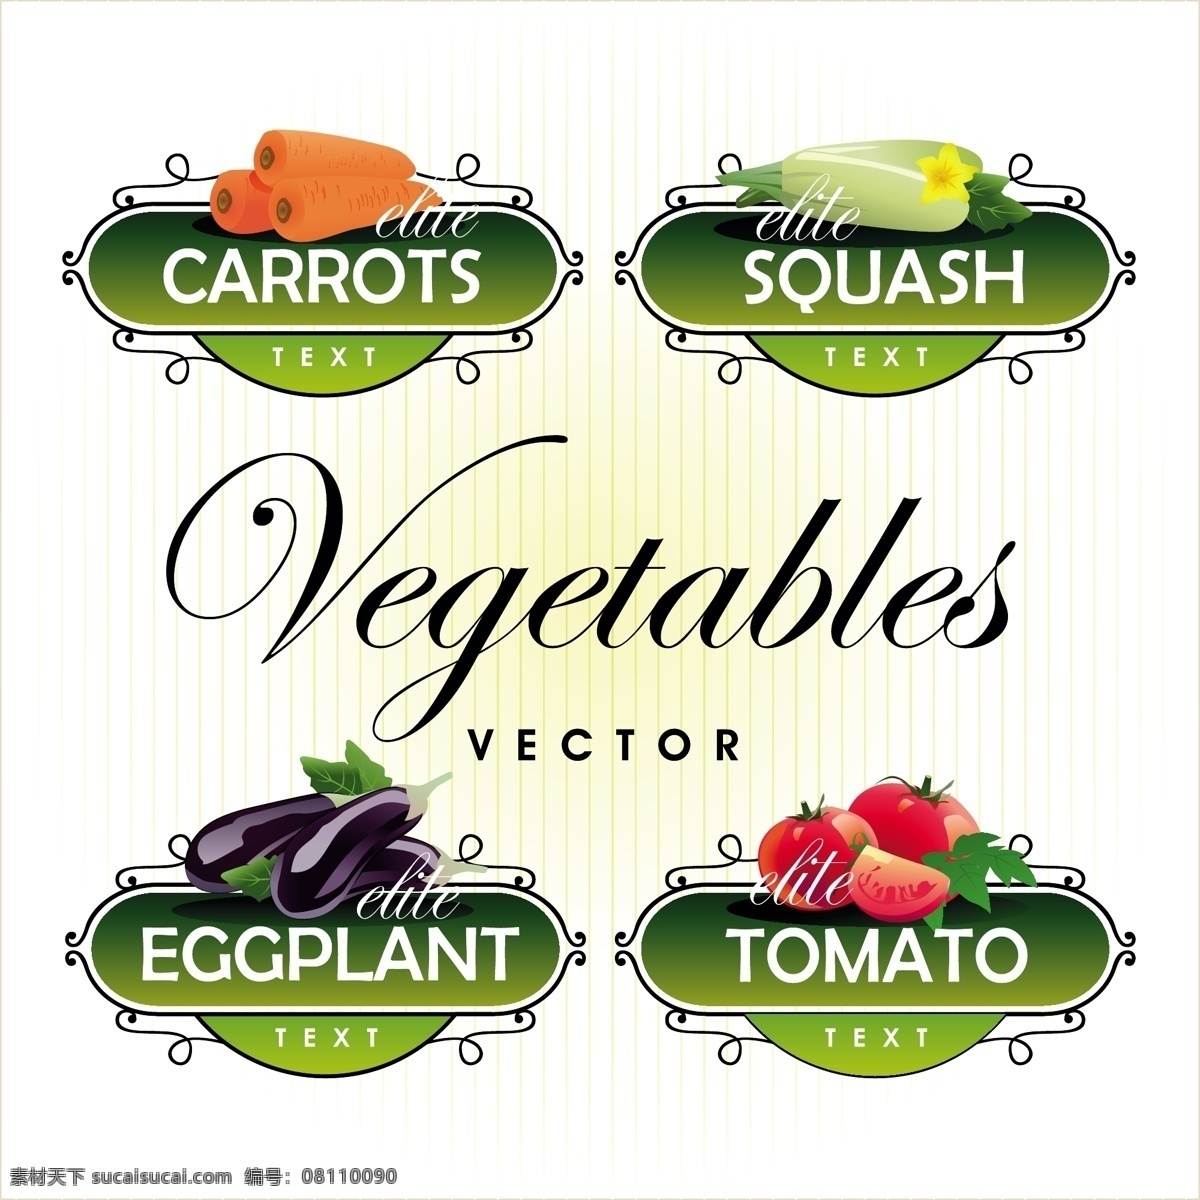 新鲜 水果 蔬菜 标签 向量 矢量食物 矢量图 其他矢量图